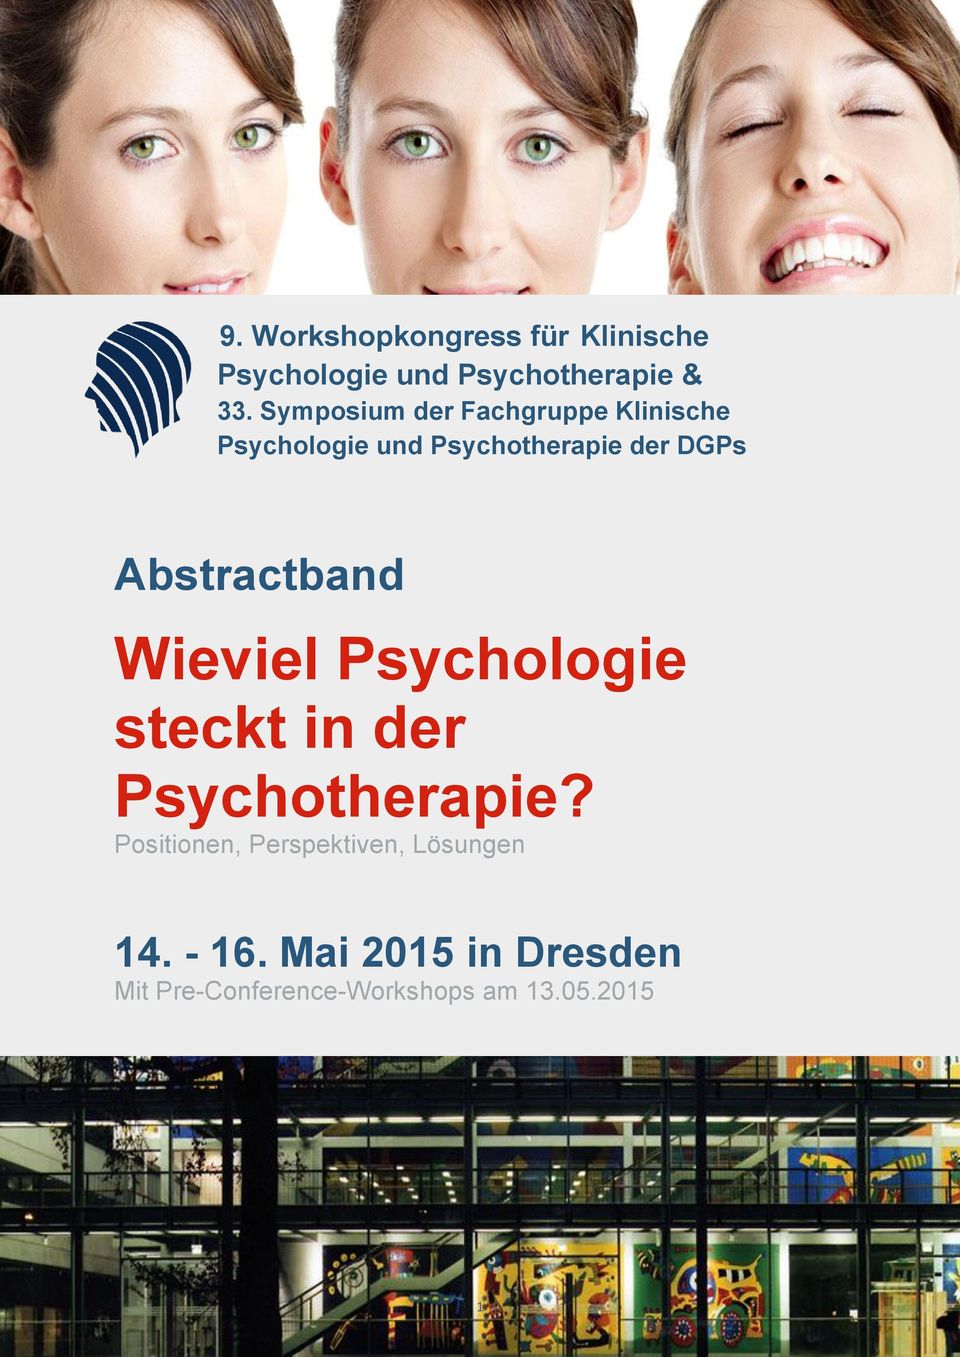 Symposium der Fachgruppe Klinische Psychologie und Psychotherapie der DGPs